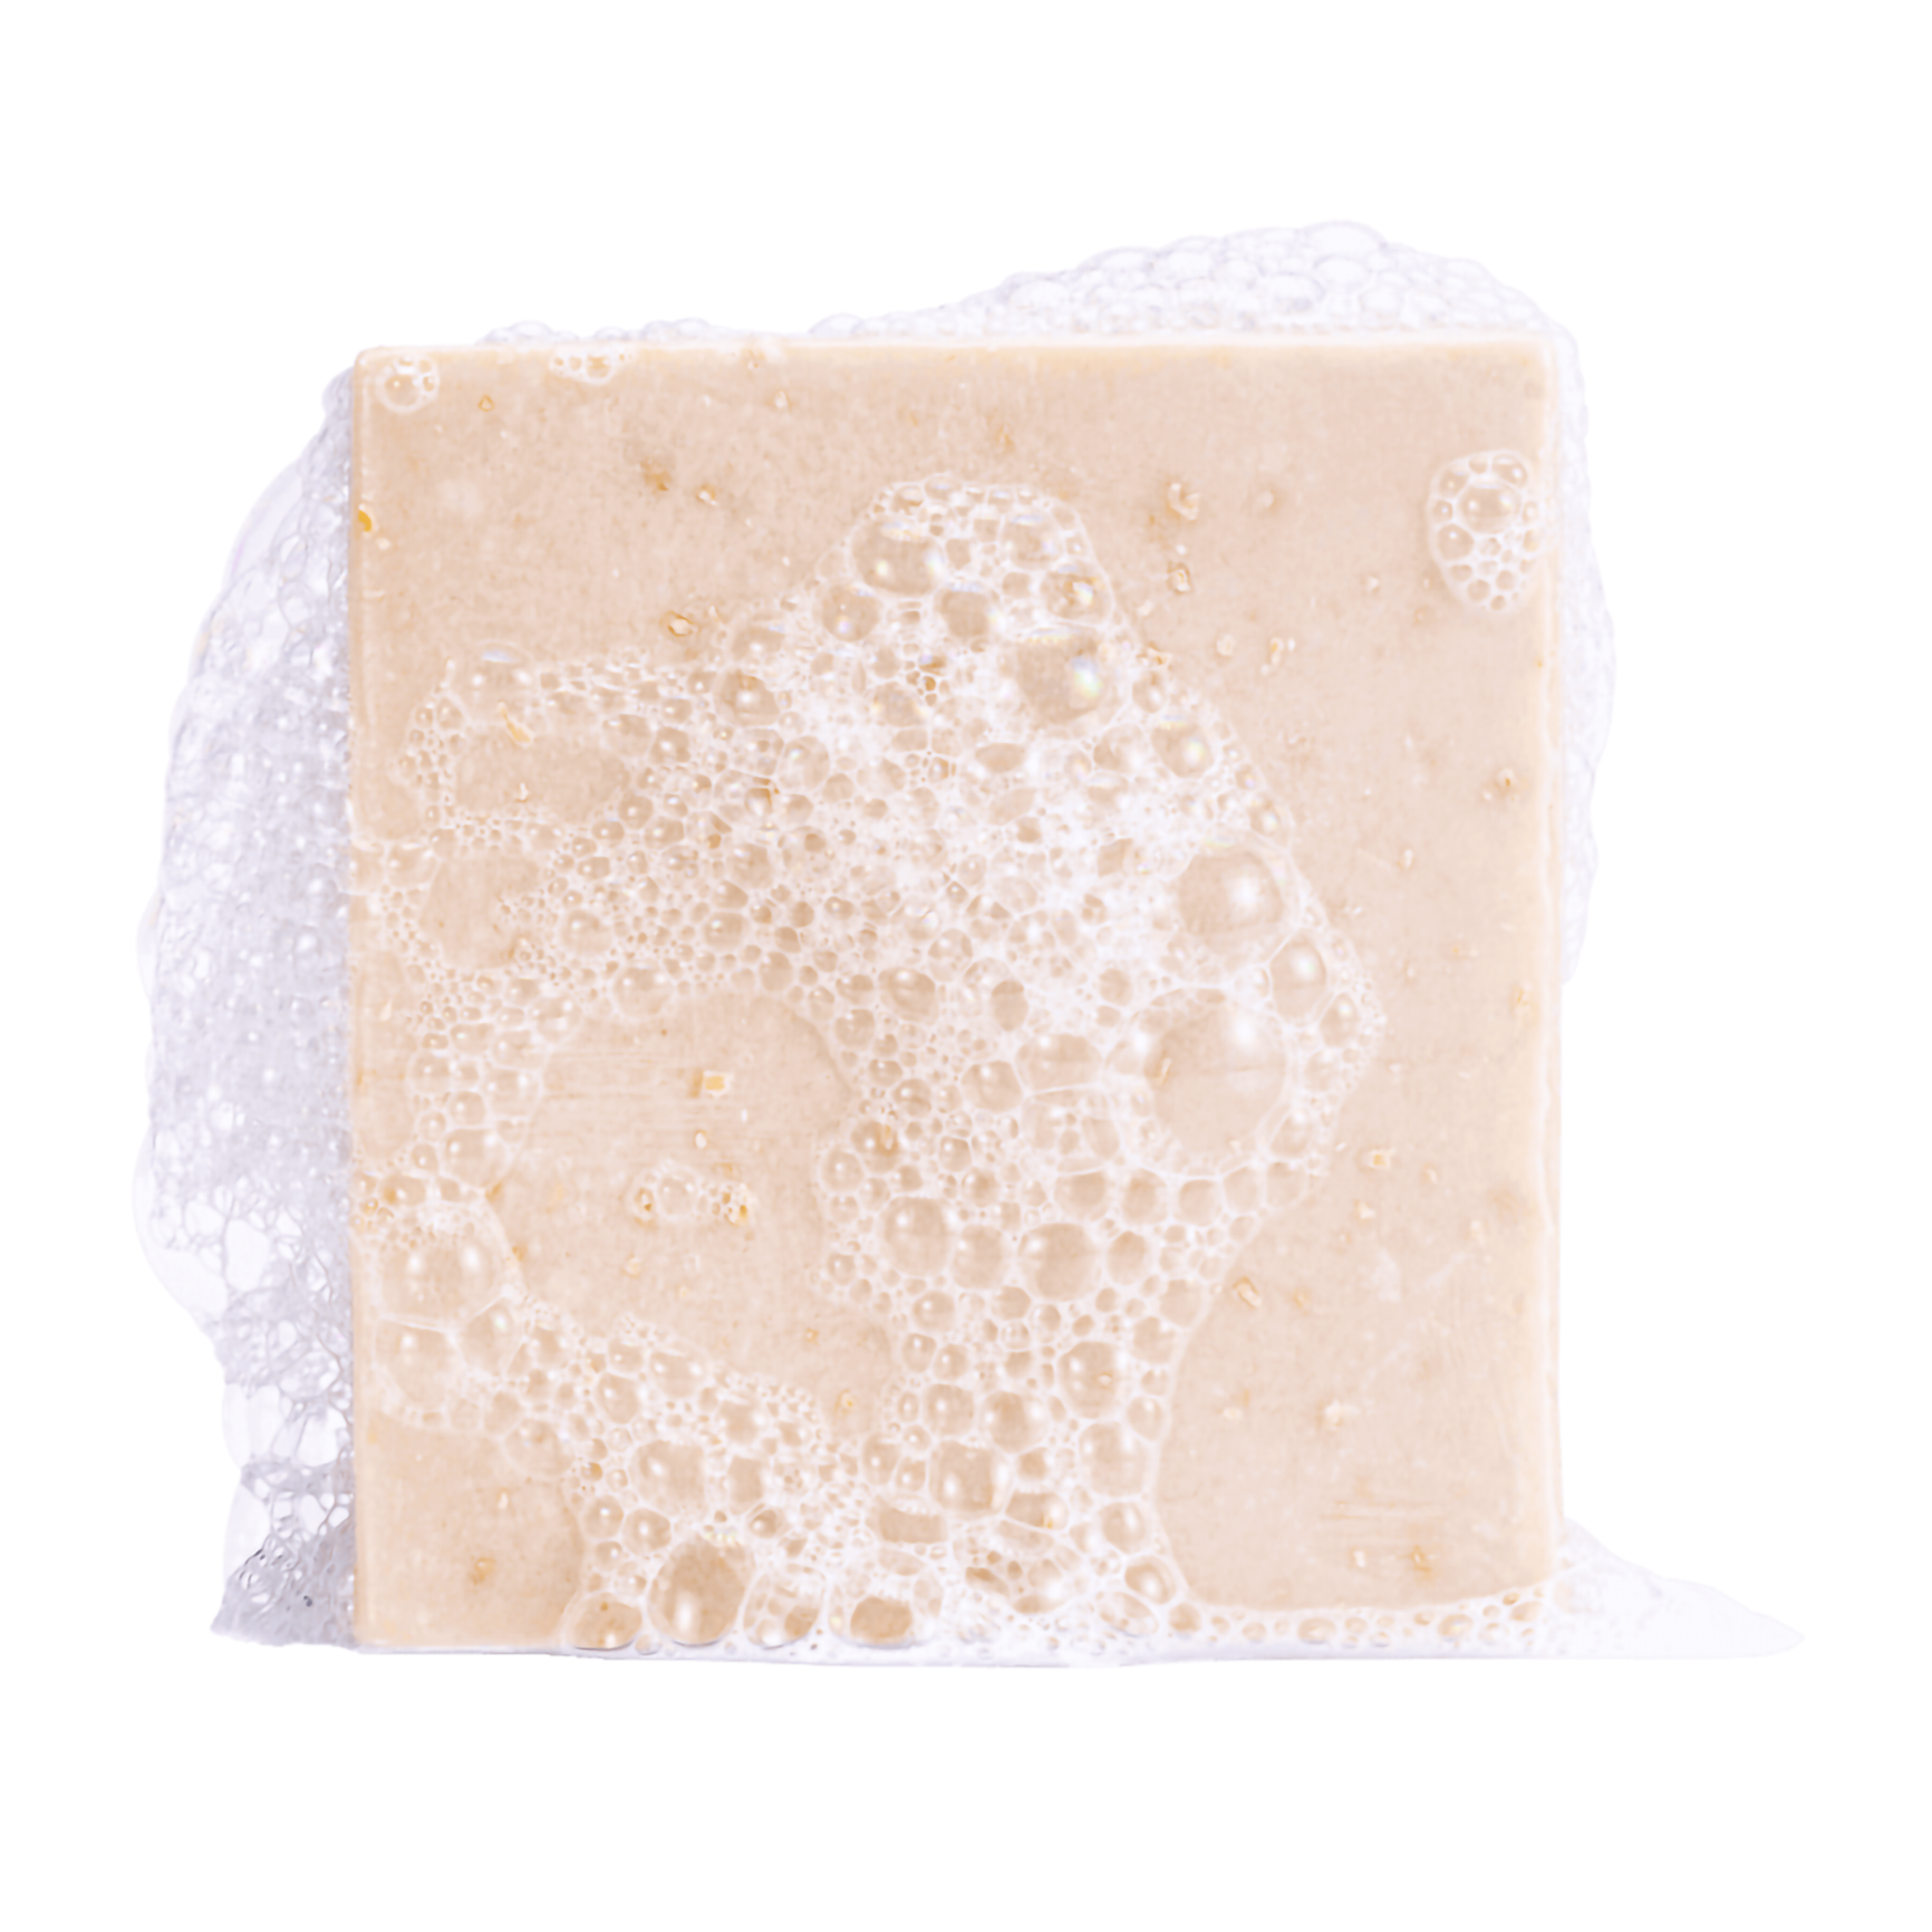 DR. SQUATCH Men's All Natural Bar Soap - Coconut Castaway - 5oz 5